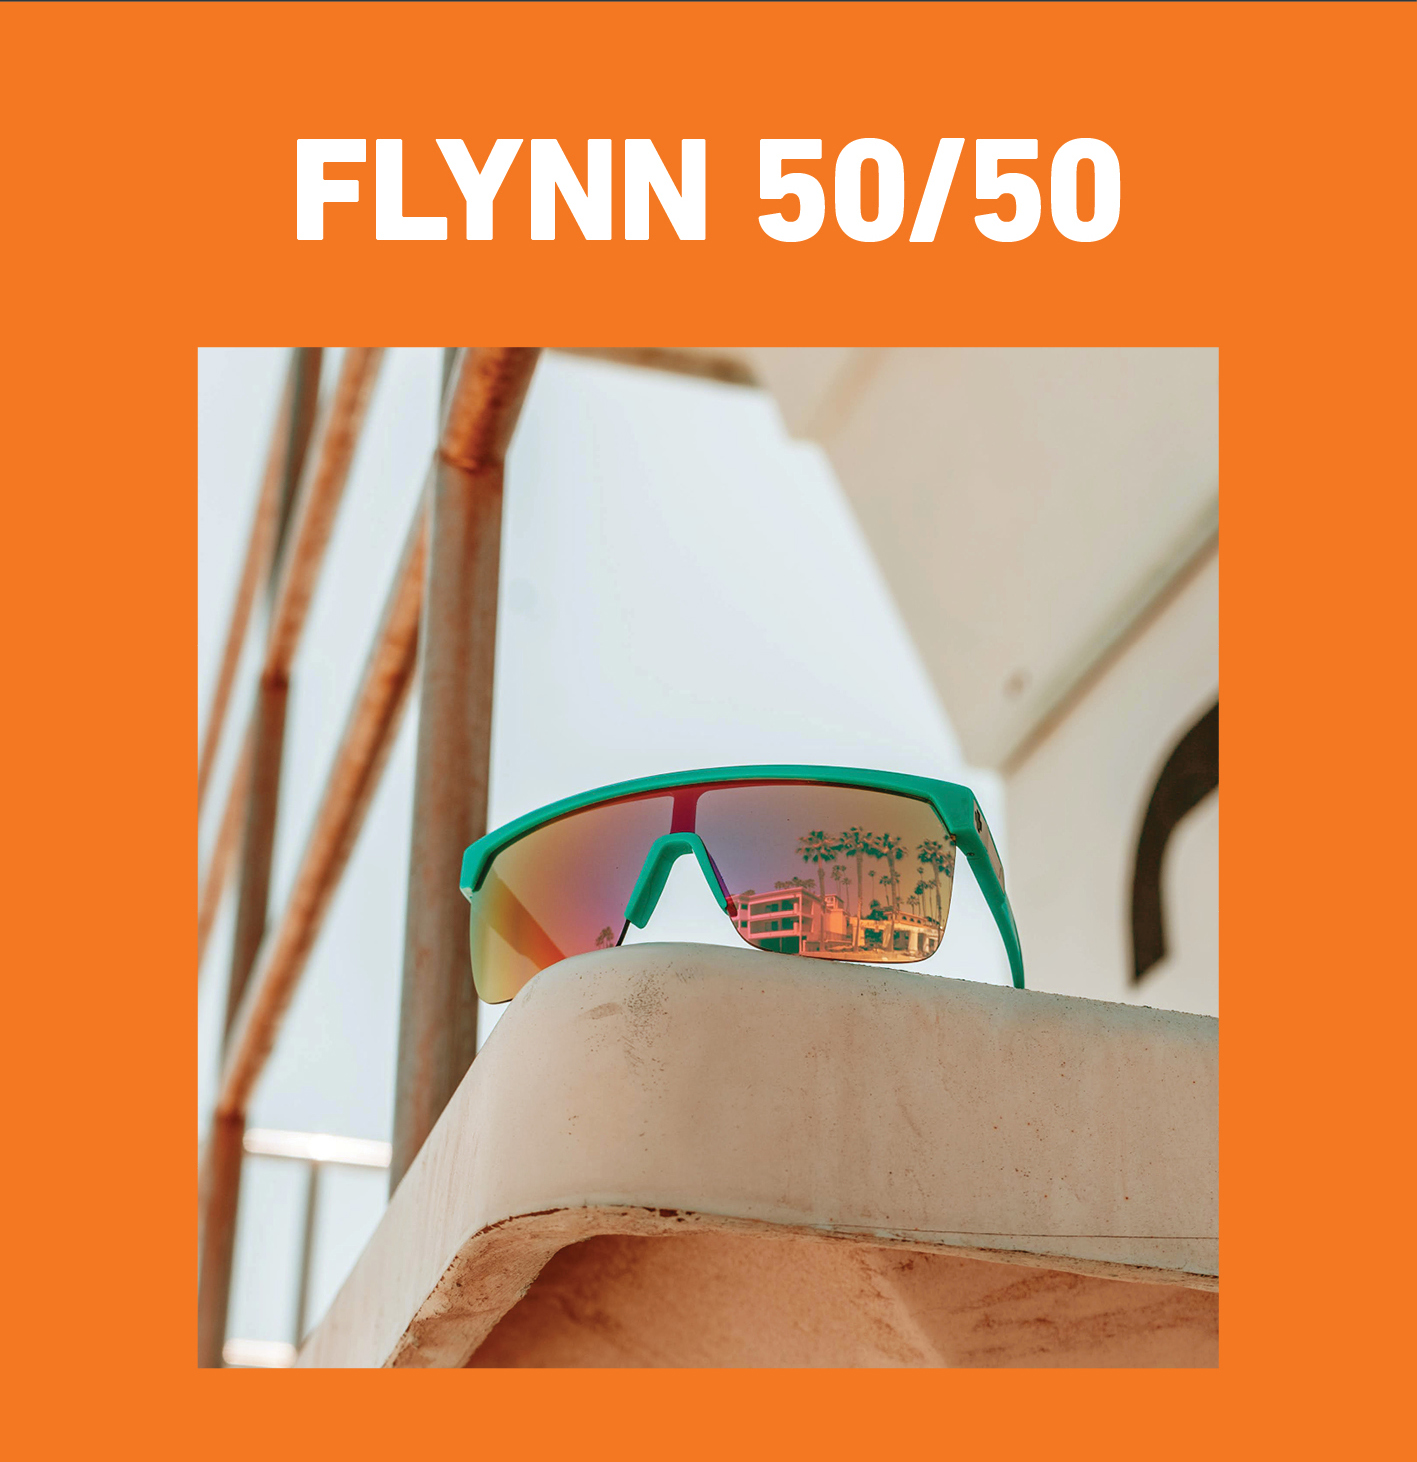 FLYNN 50/50